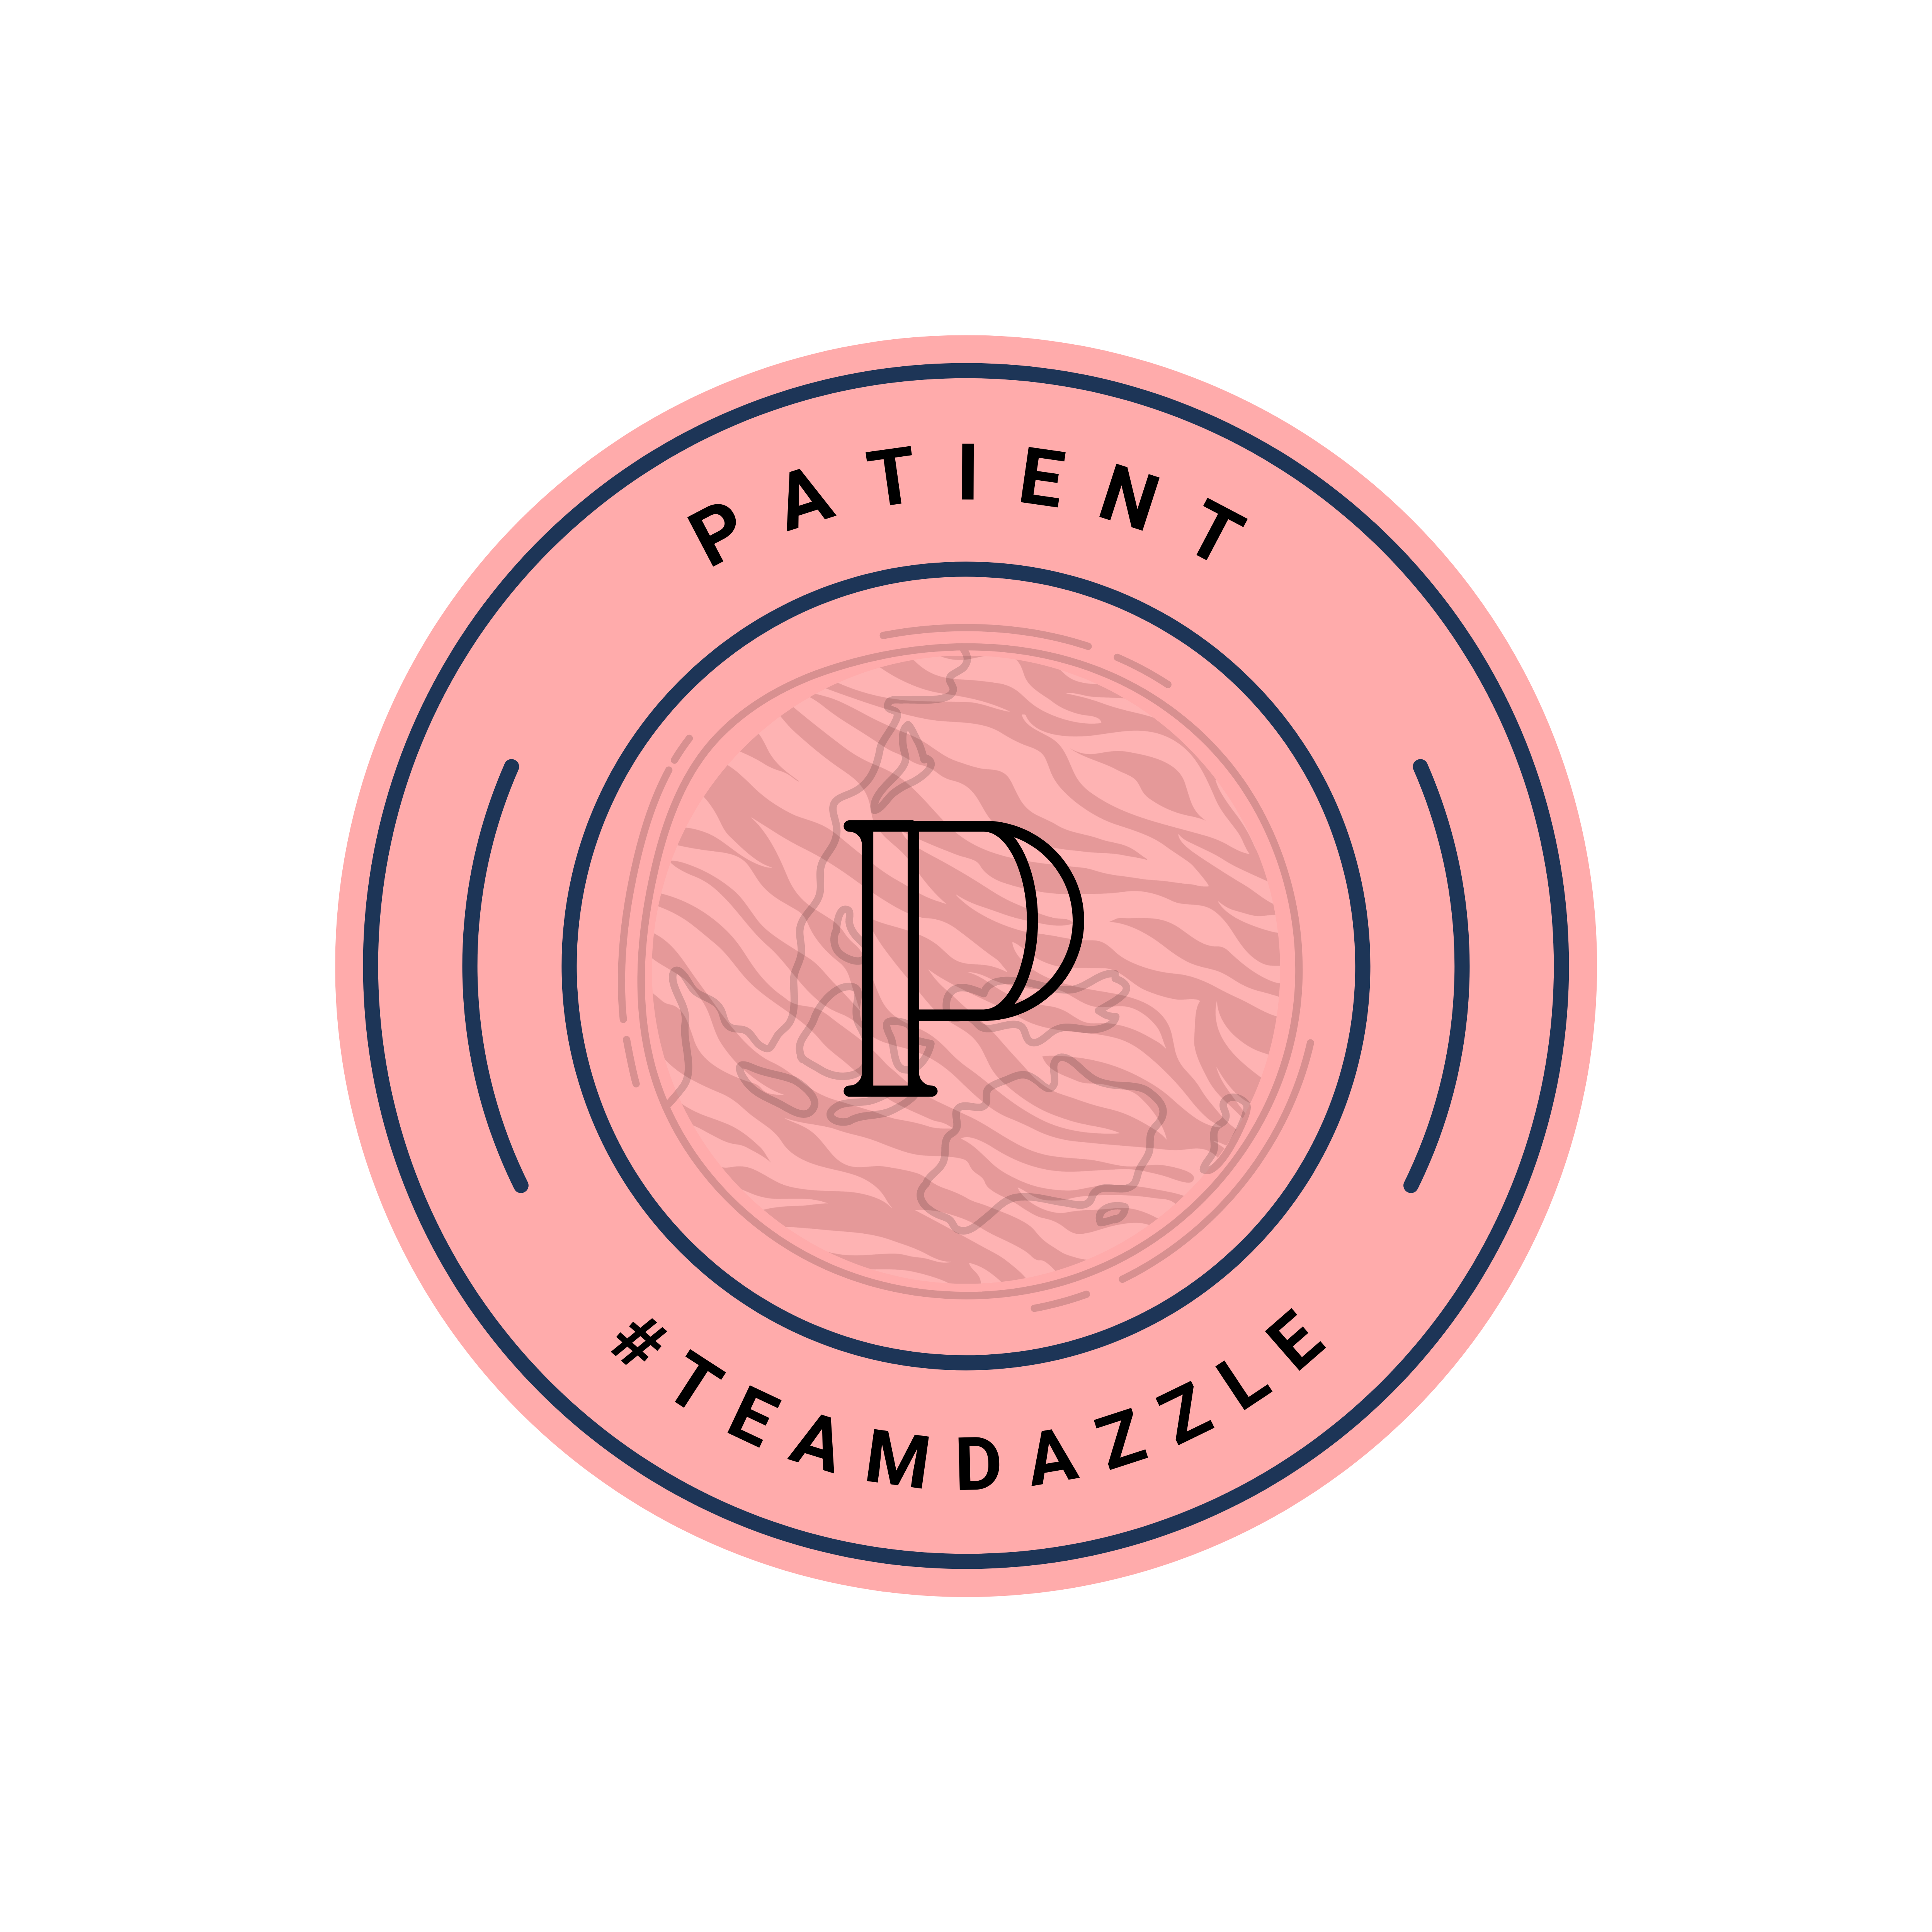 Patient Badge #TeamDazzle